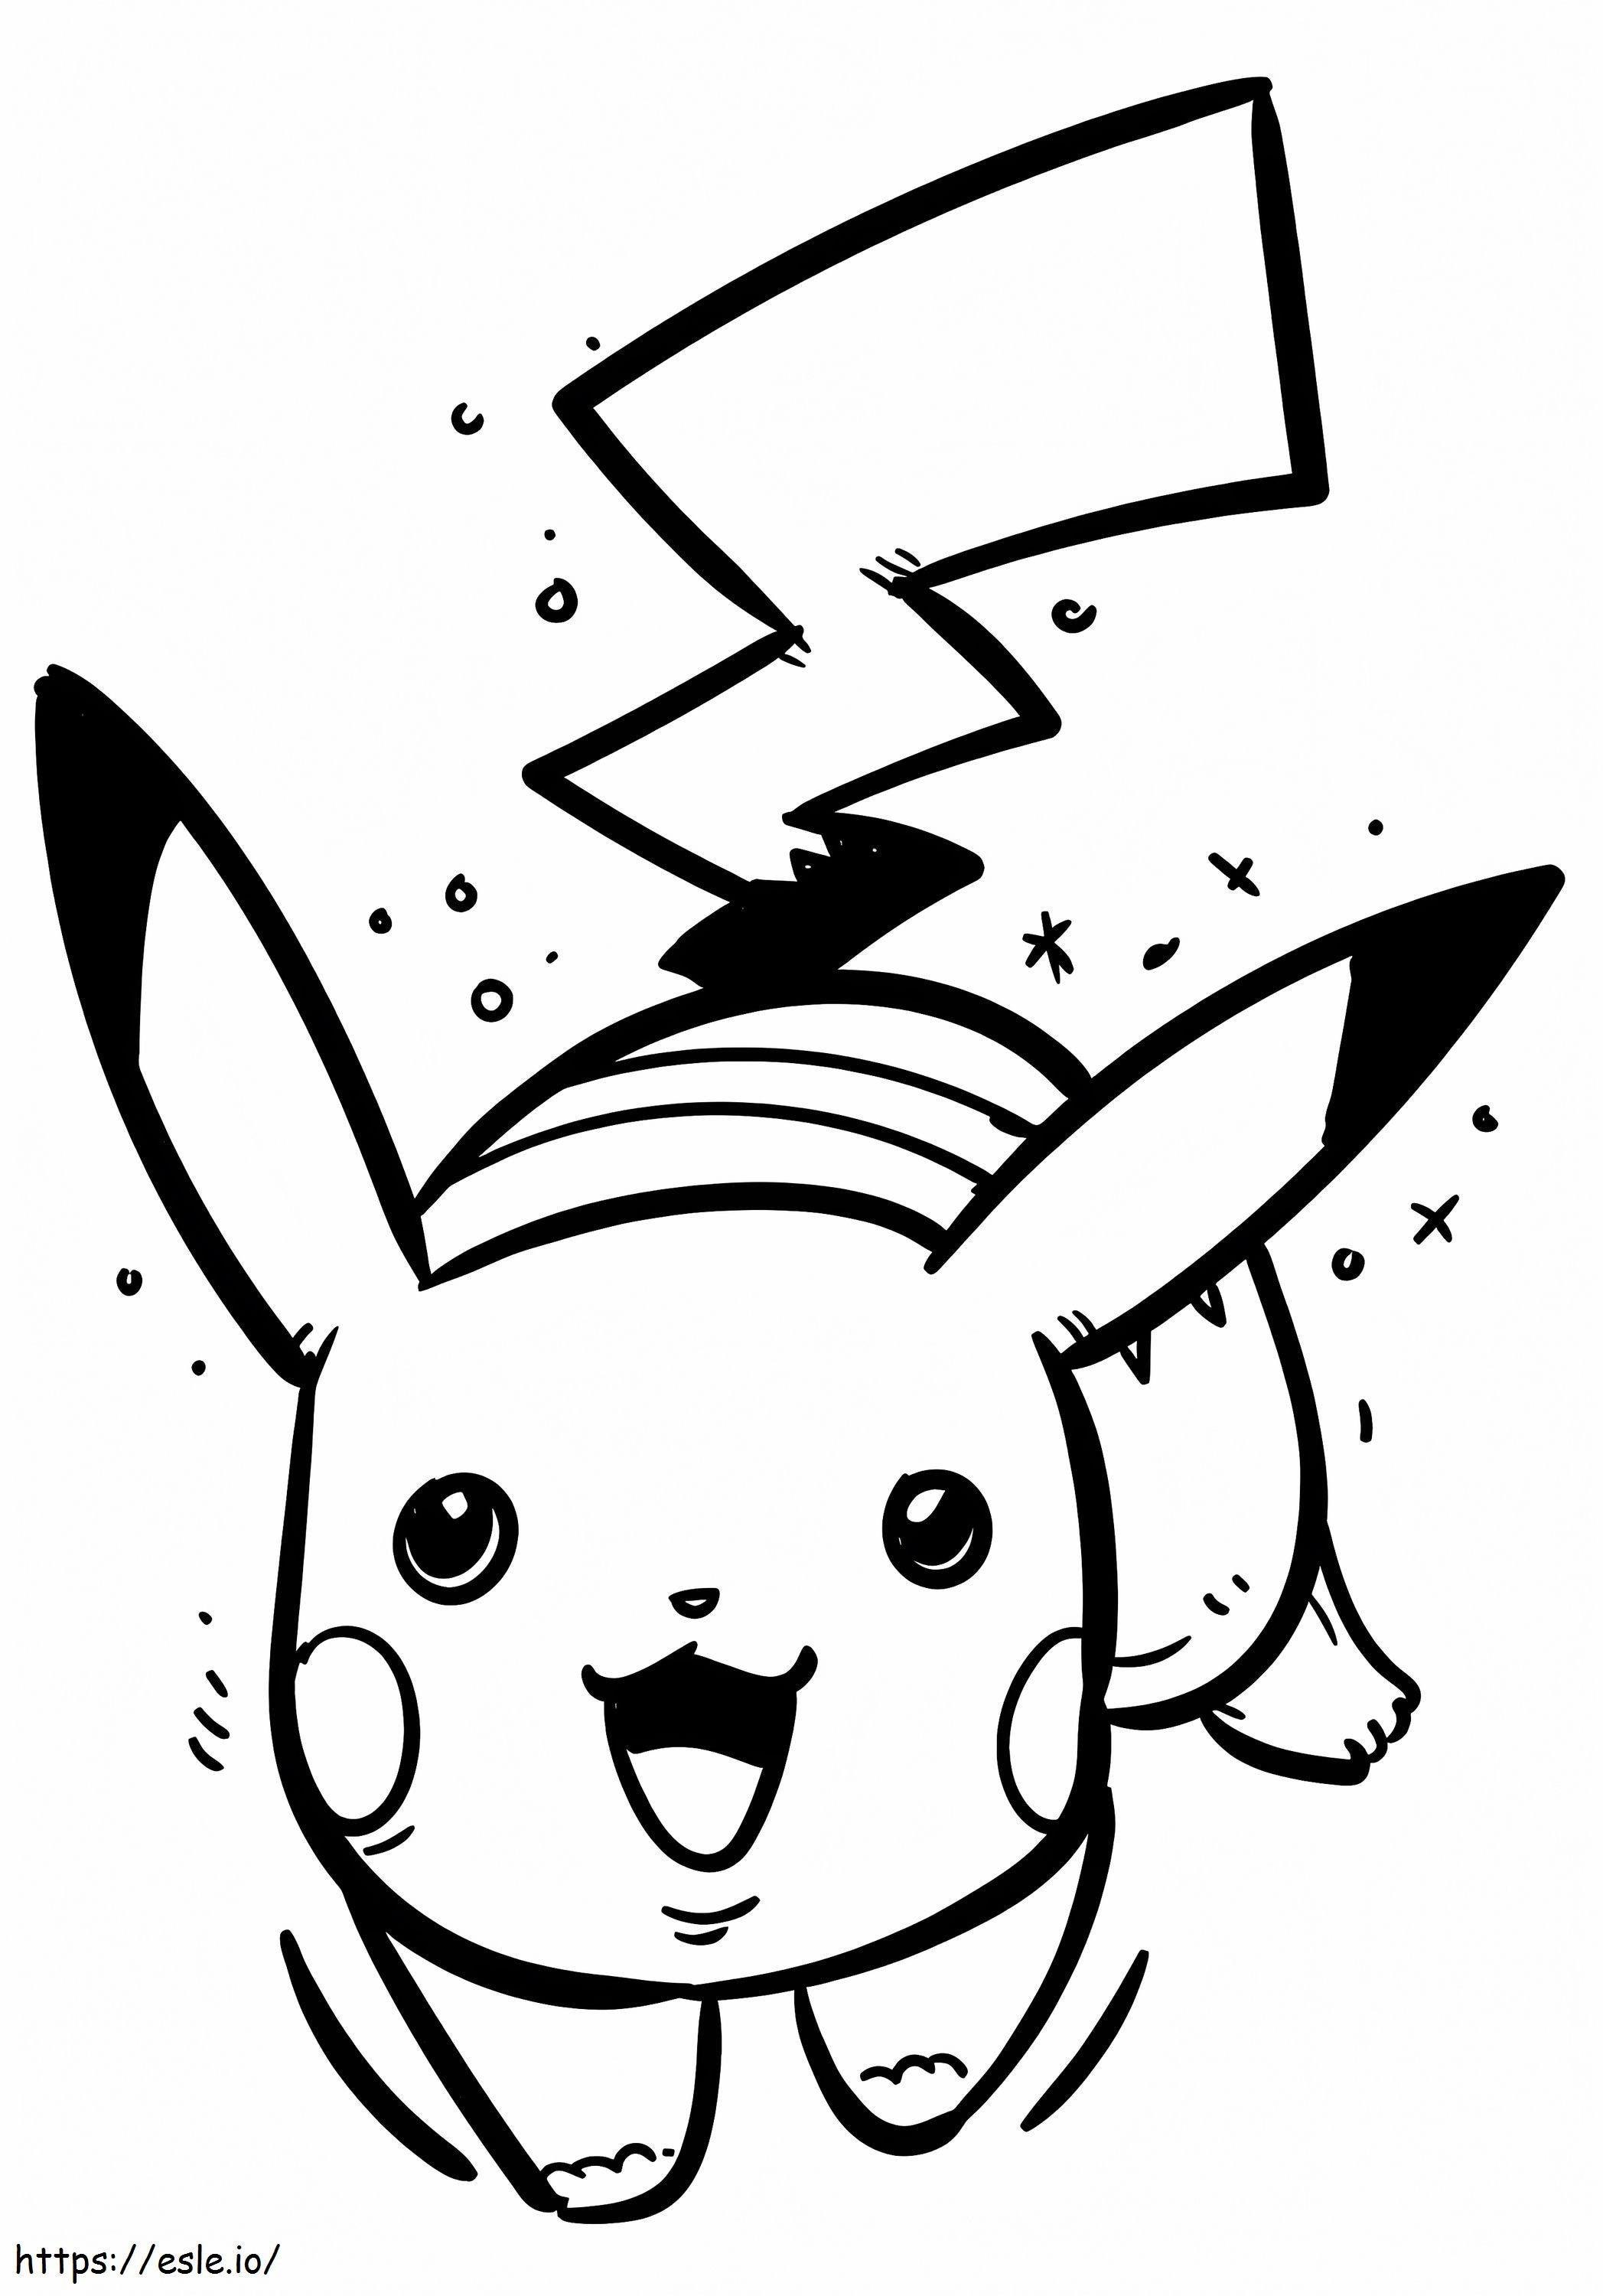 Nettes Pikachu lächelnd ausmalbilder